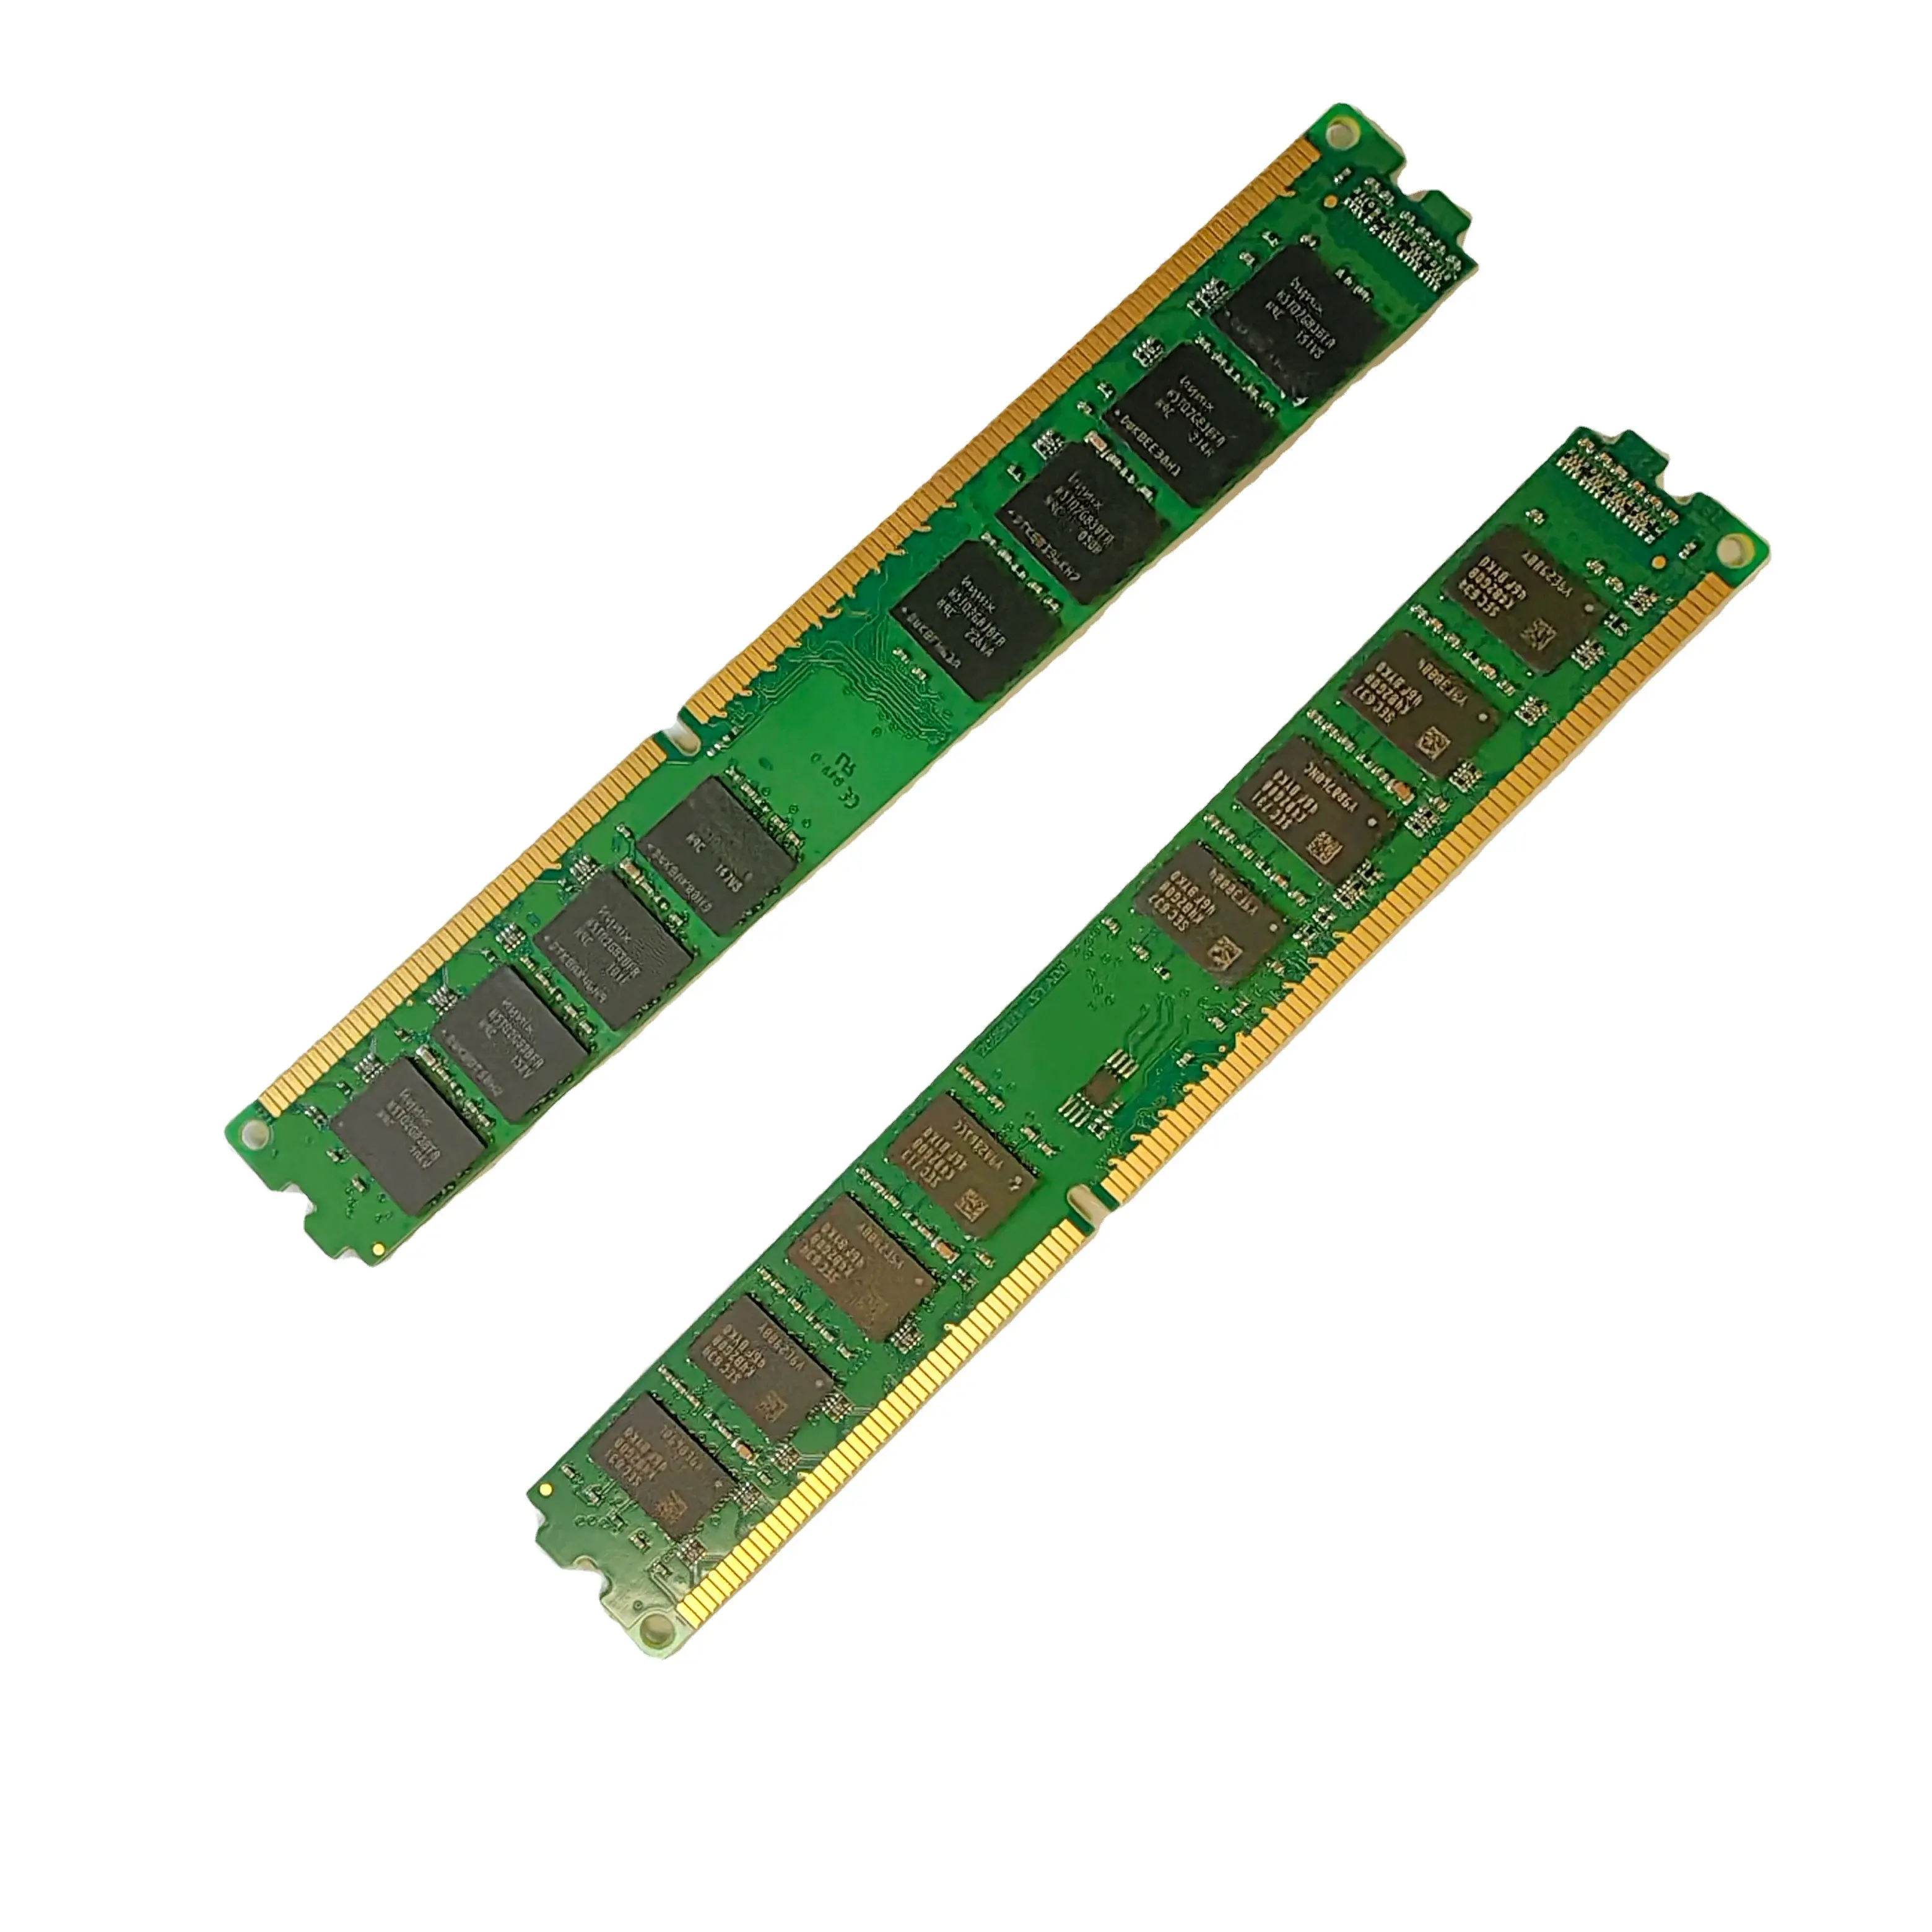 Großhandel guter Preis DDR3 neu hergestellt 8 GB RAM 1333/1600 MHZ 1,5 V Speicher Desktop doppelrang